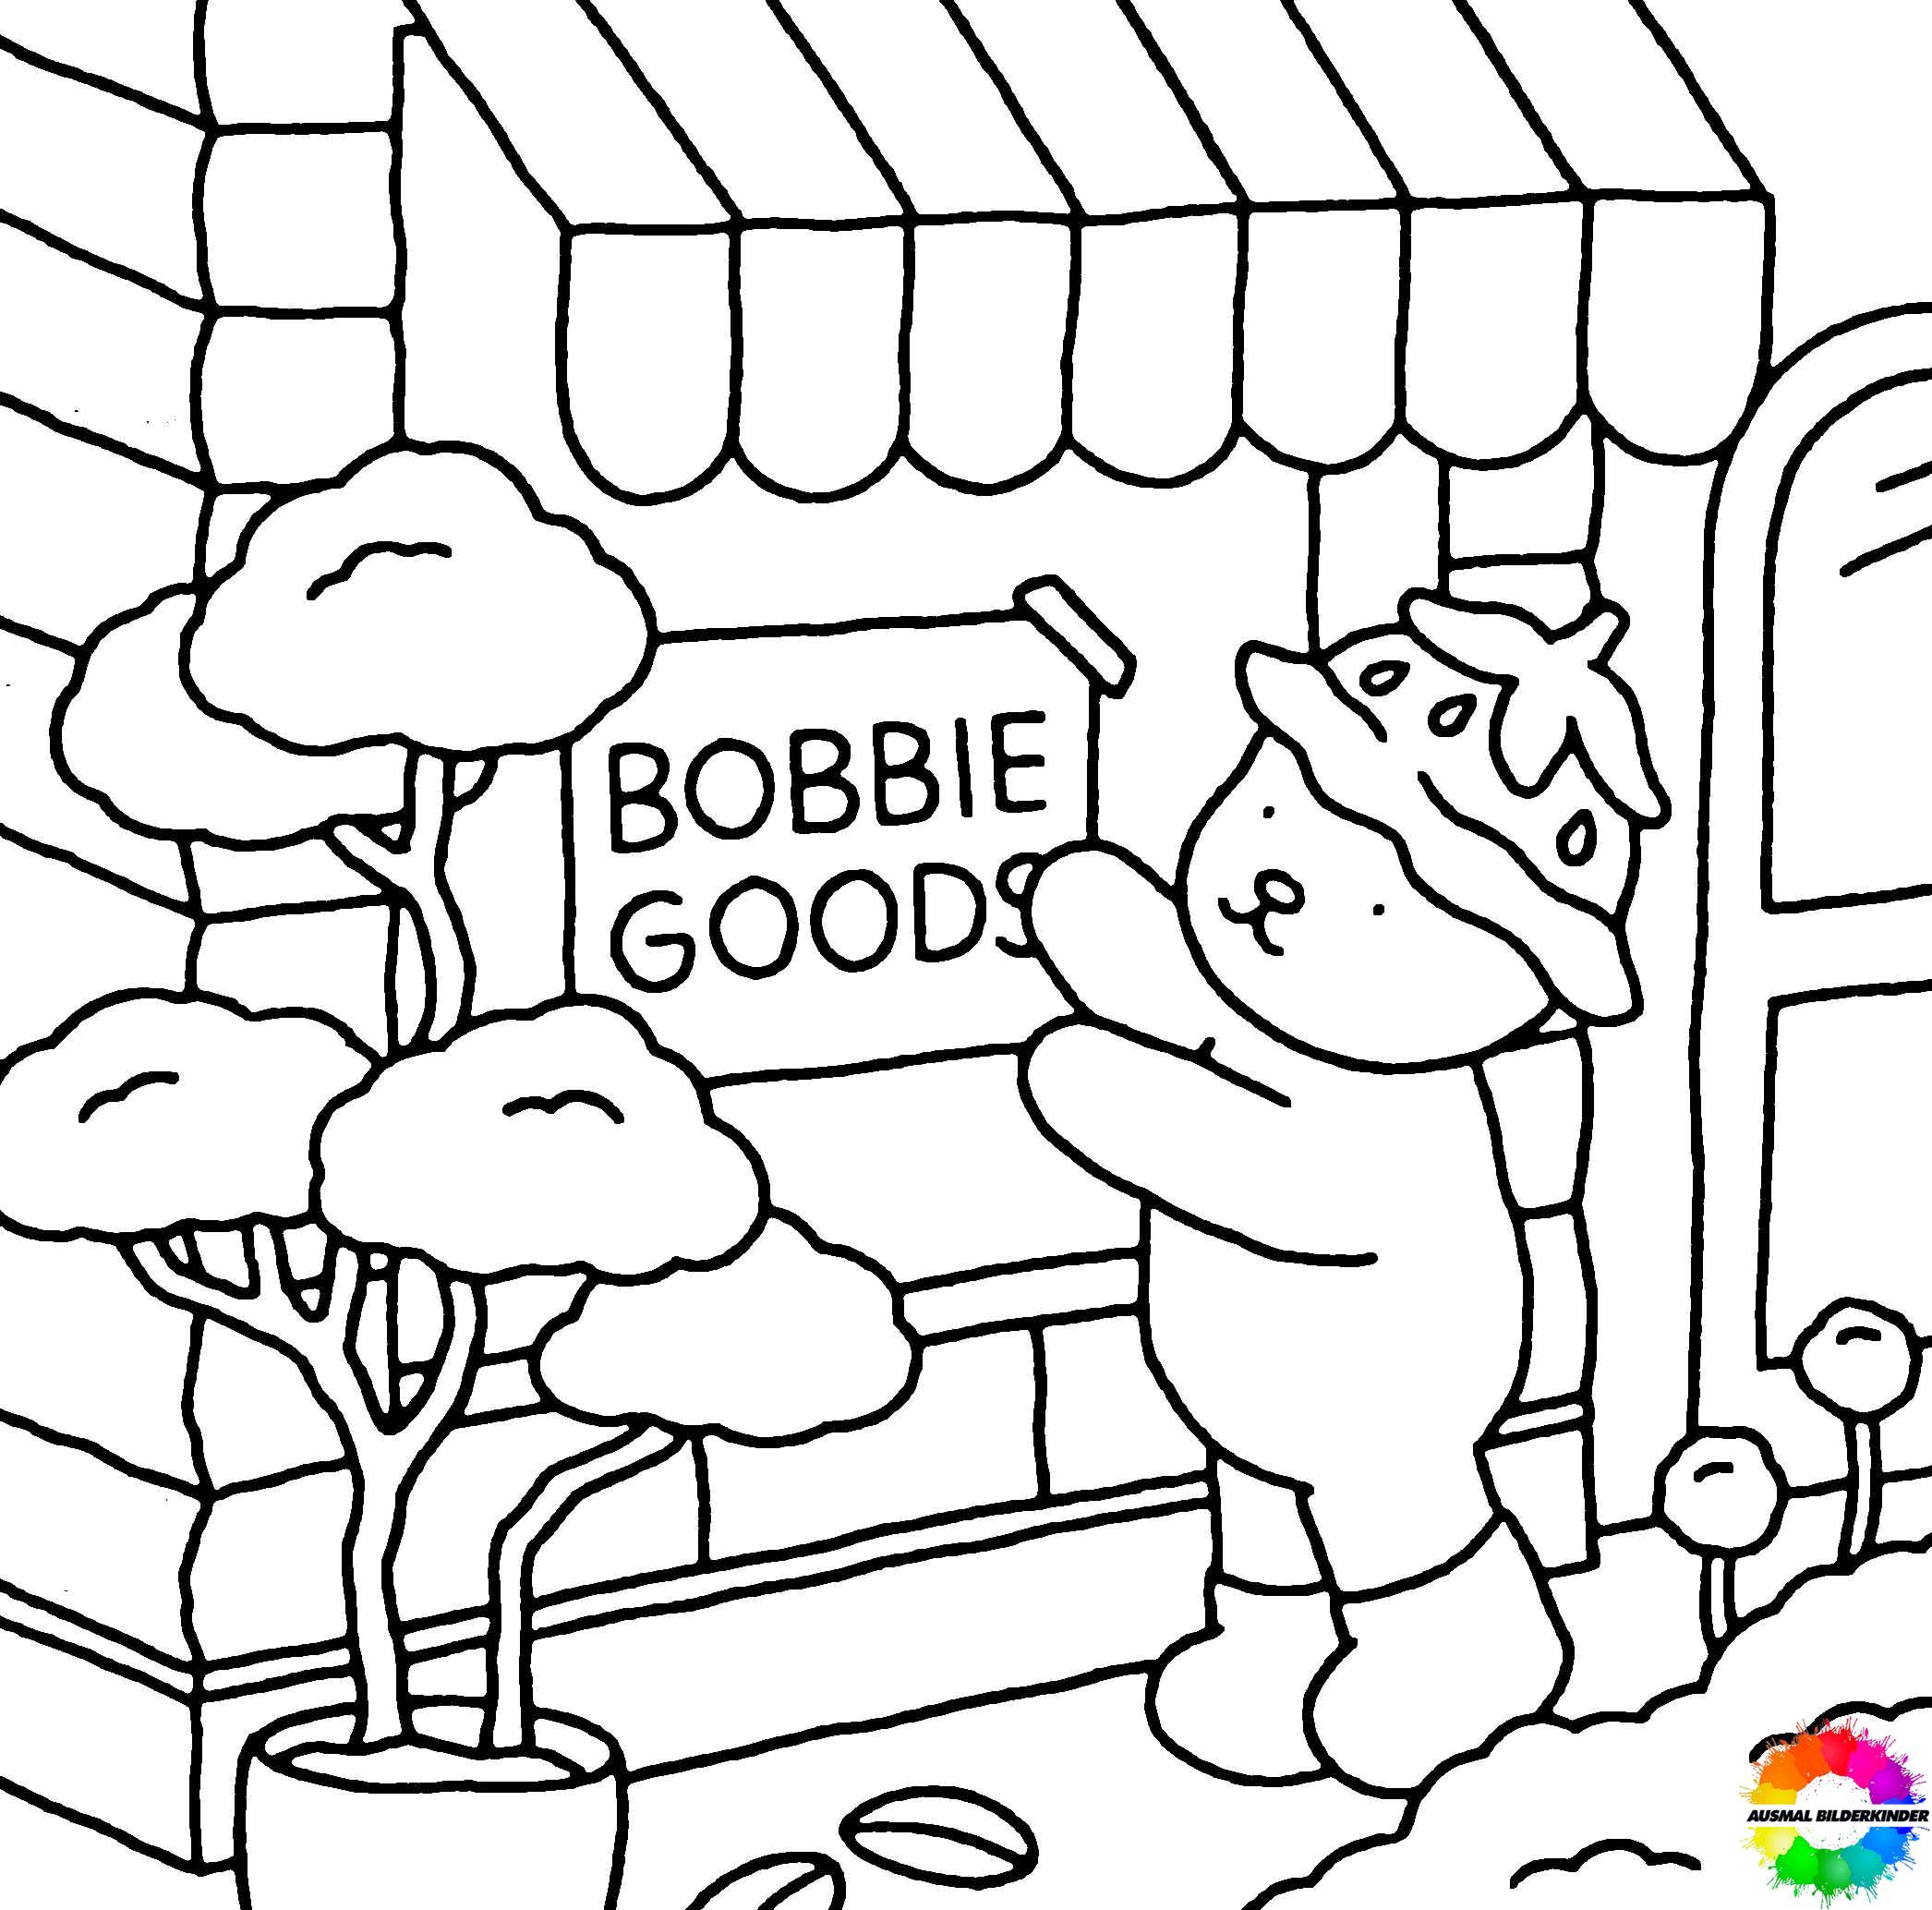 Bobbie Goods 45